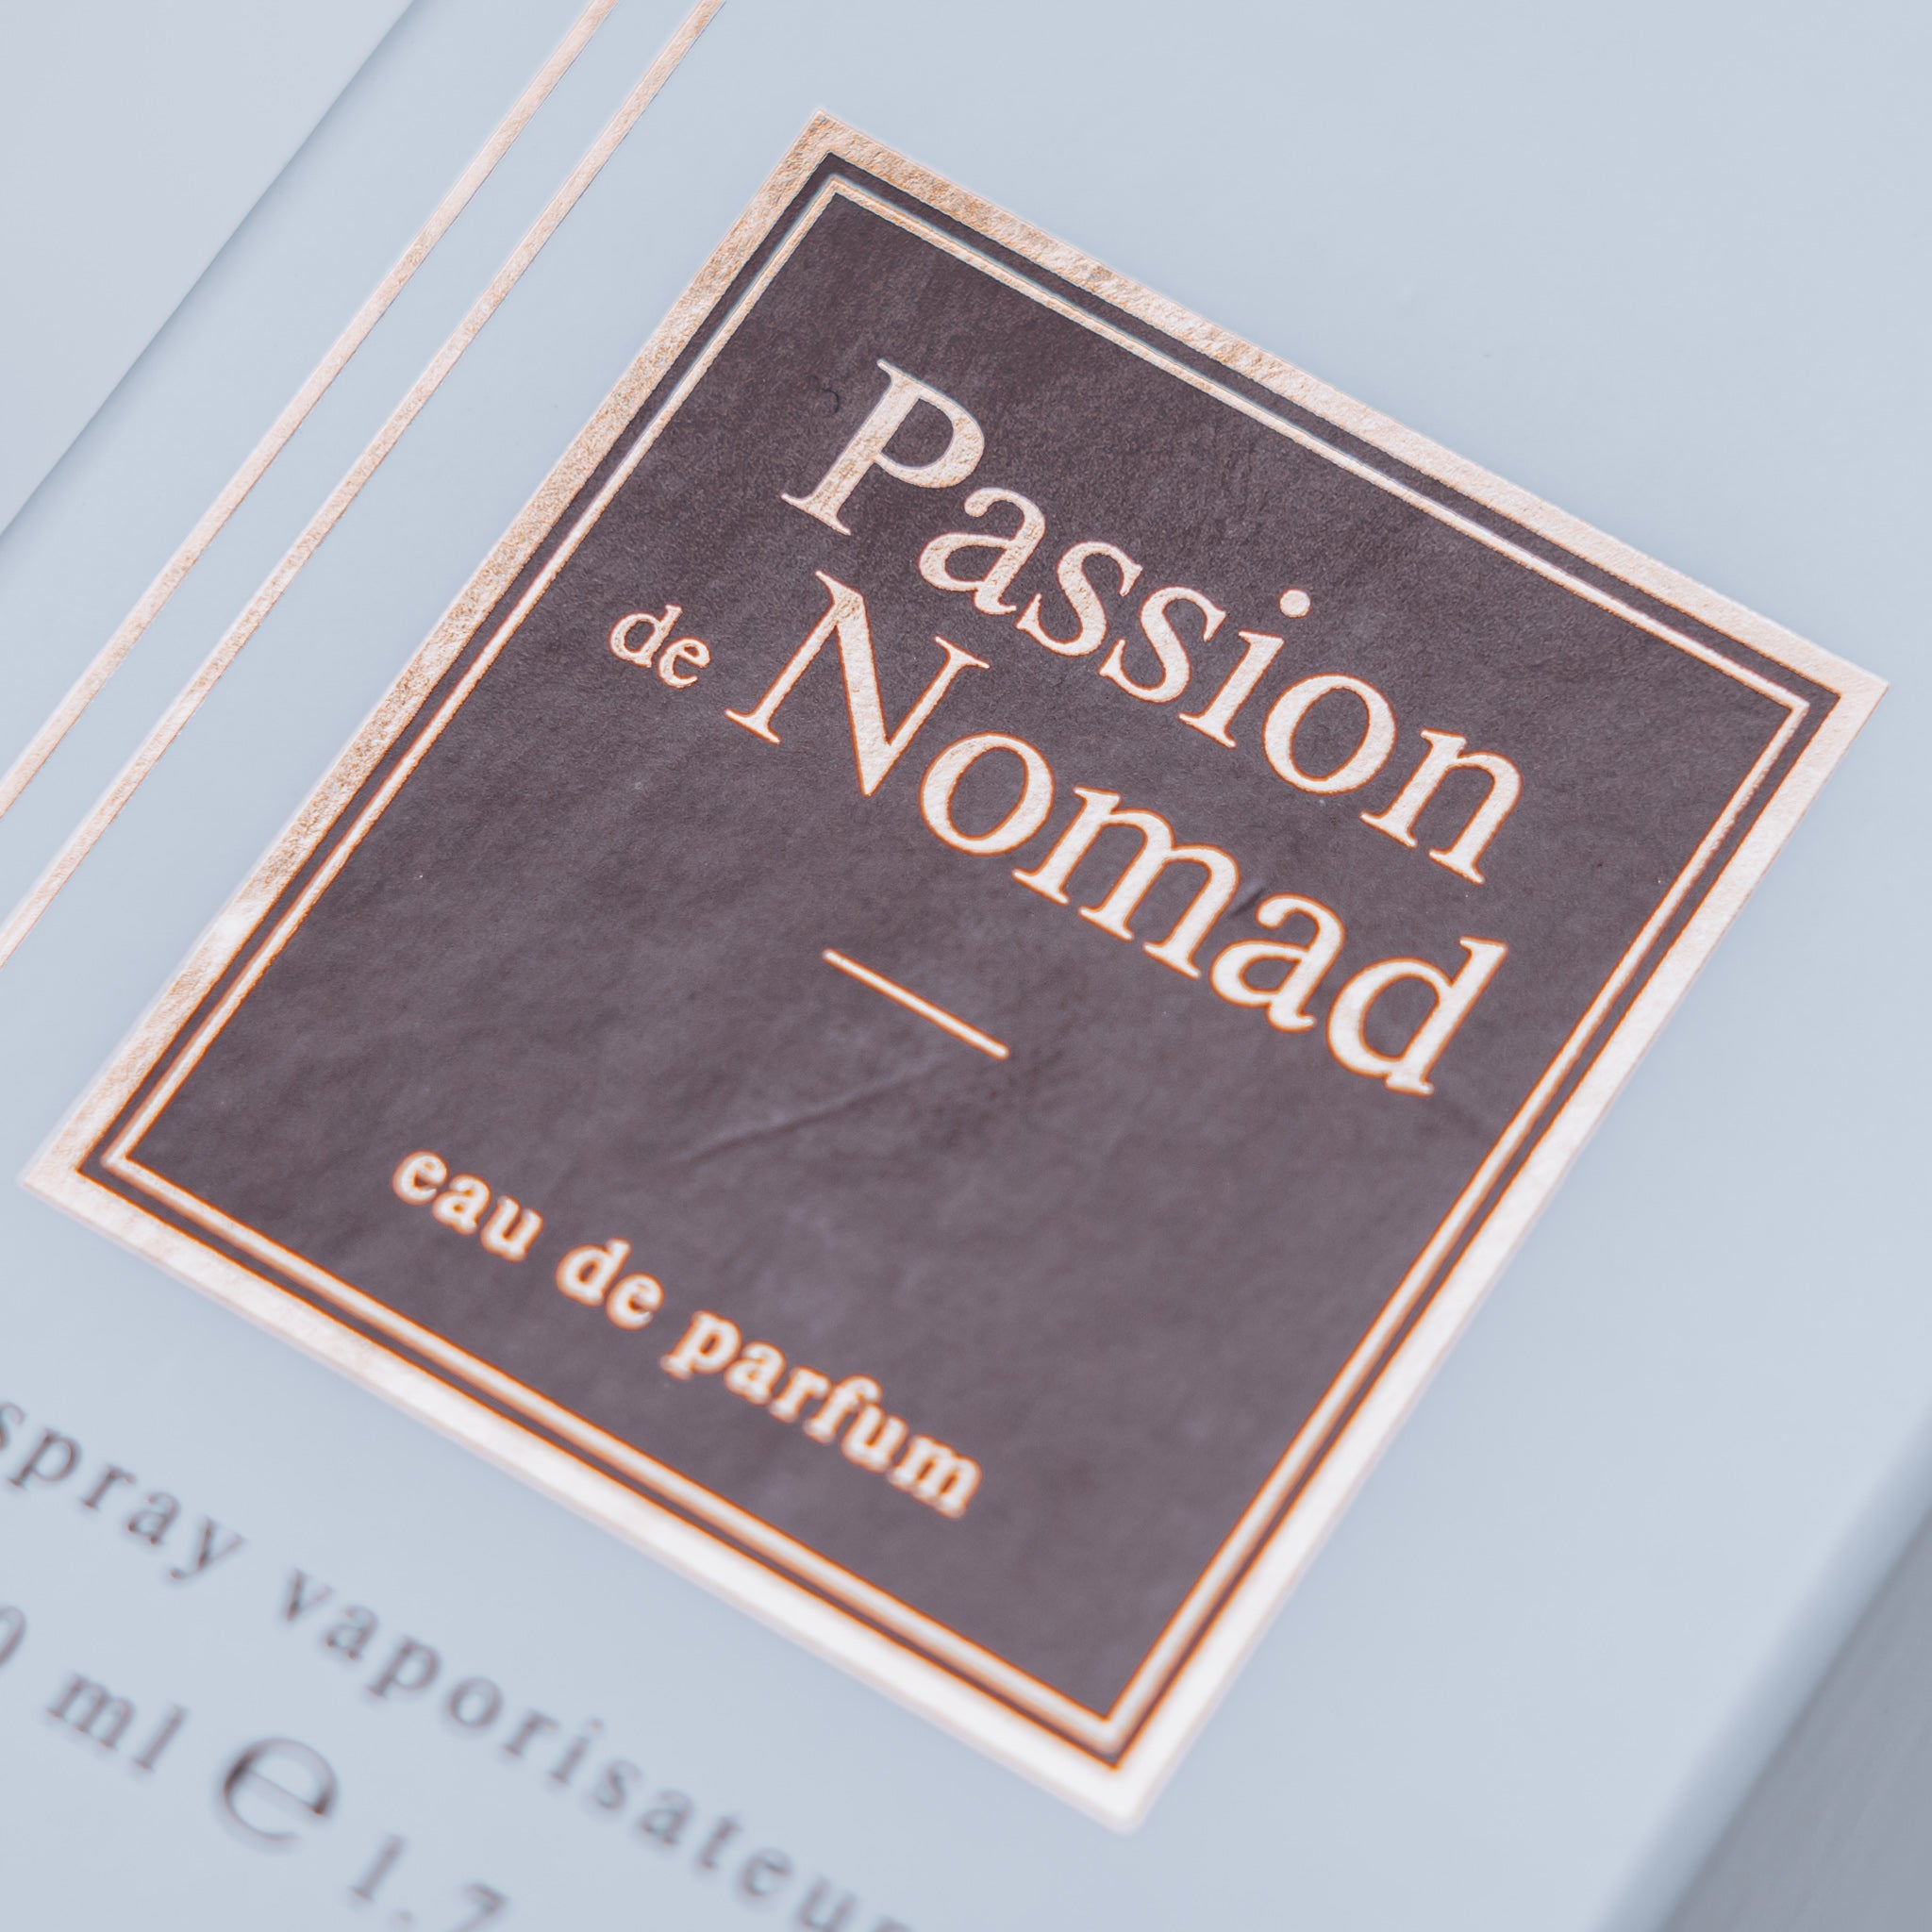 Amaari Parfum Passion de Nomade, inspired by Ombre Nomad Louis Vuitton - 50ml - Amaari Parfum